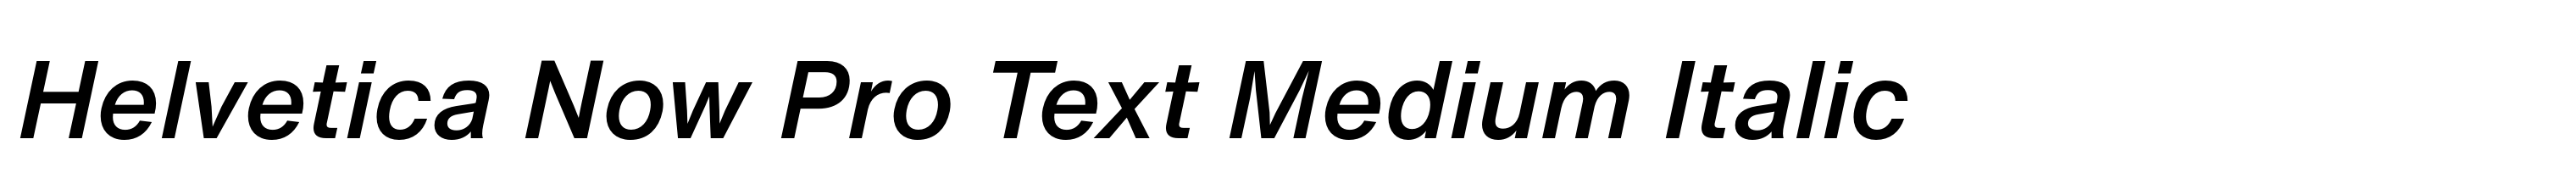 Helvetica Now Pro Text Medium Italic